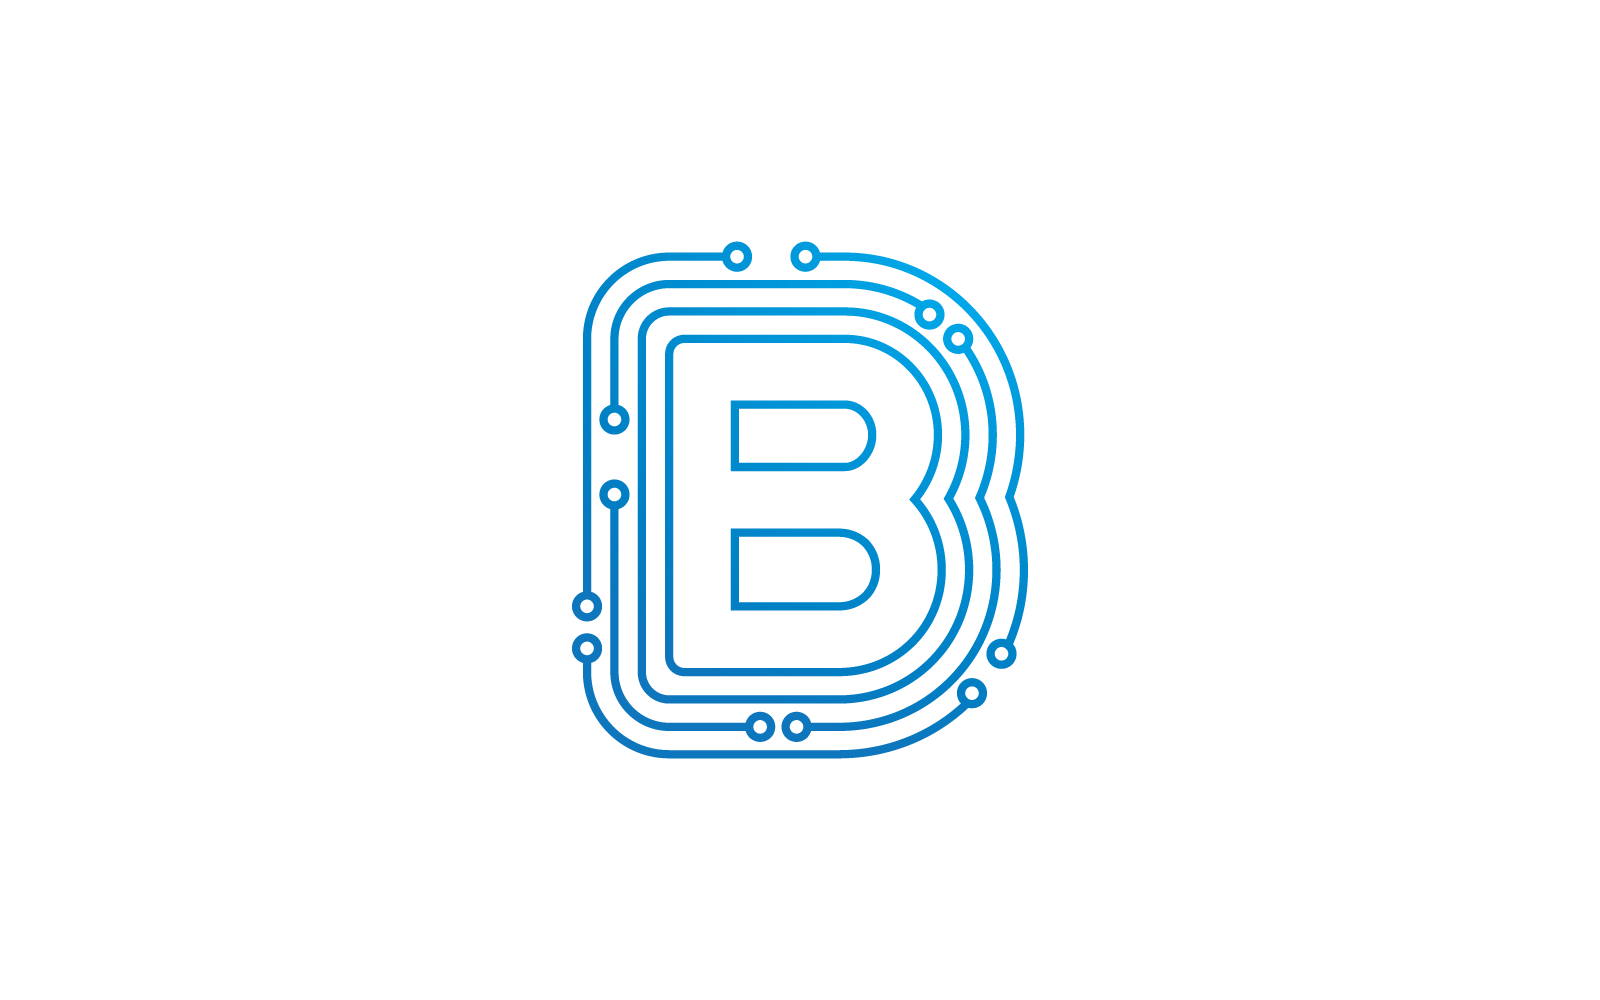 Počáteční písmeno B Circuit technology illustration logo vector template